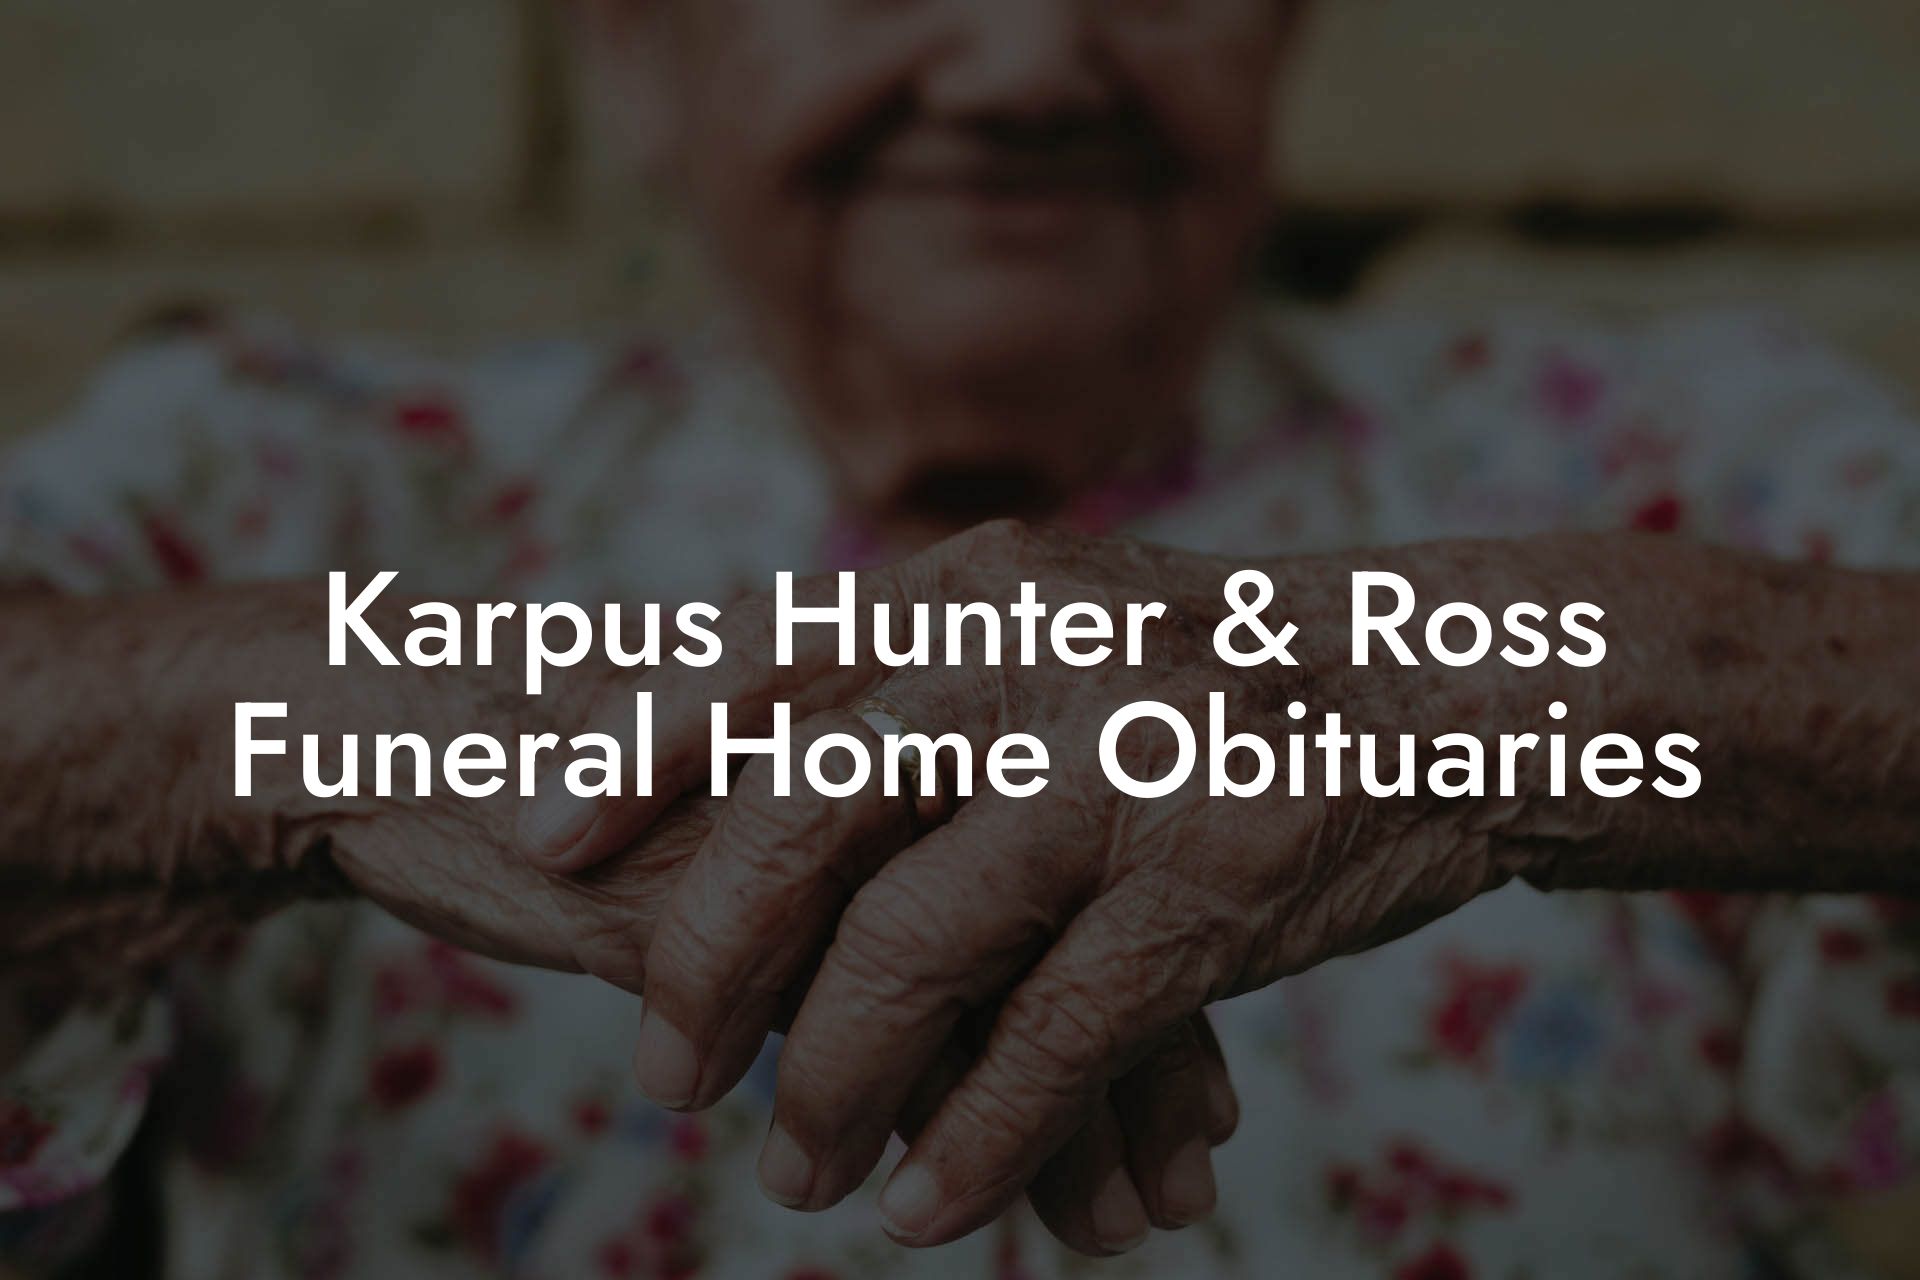 Karpus Hunter & Ross Funeral Home Obituaries